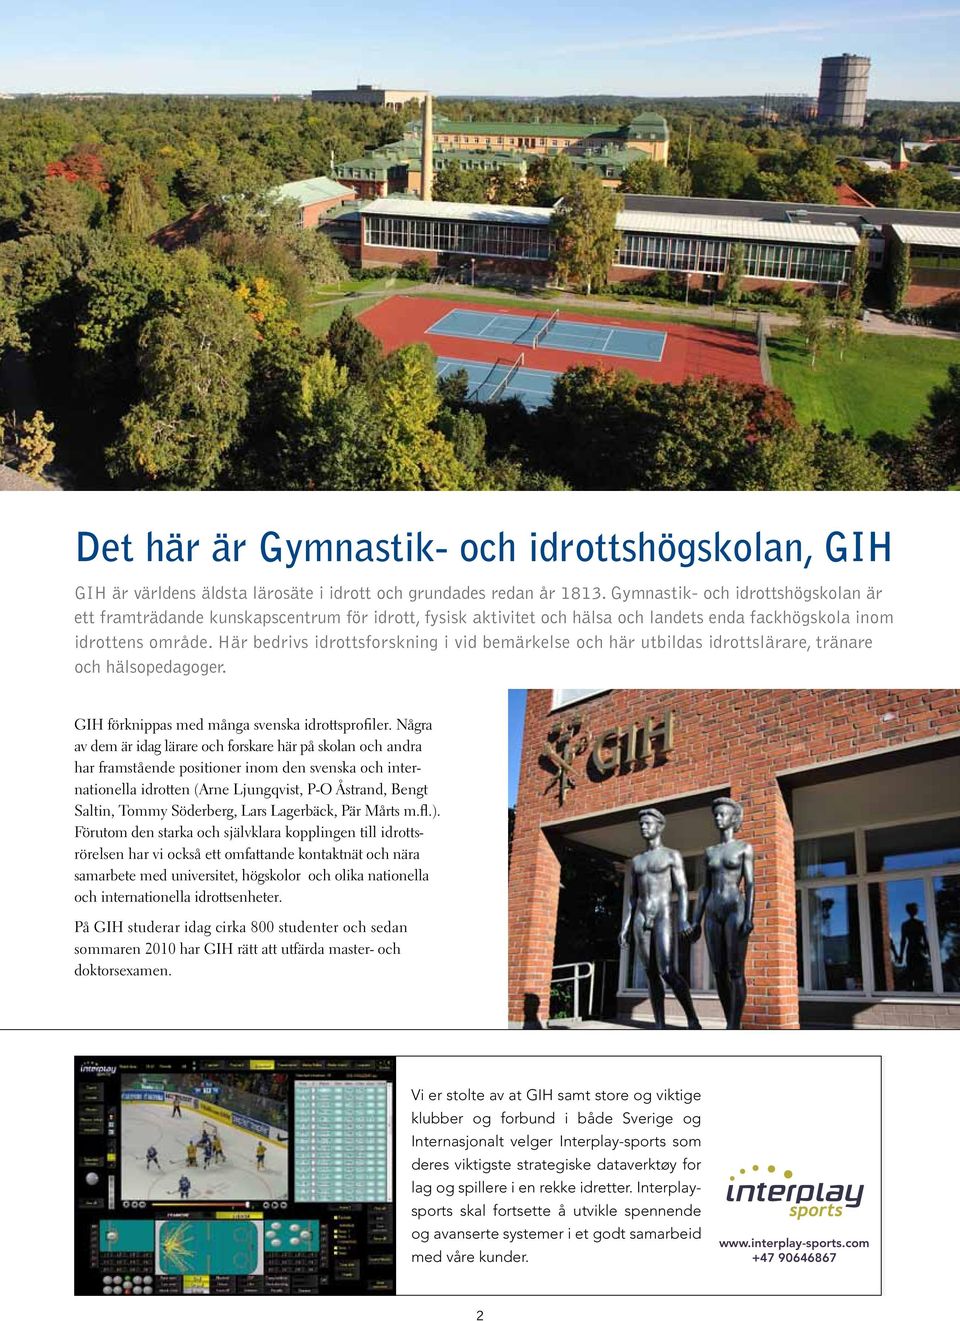 Här bedrivs idrottsforskning i vid bemärkelse och här utbildas idrottslärare, tränare och hälsopedagoger. GIH förknippas med många svenska idrottsprofiler.